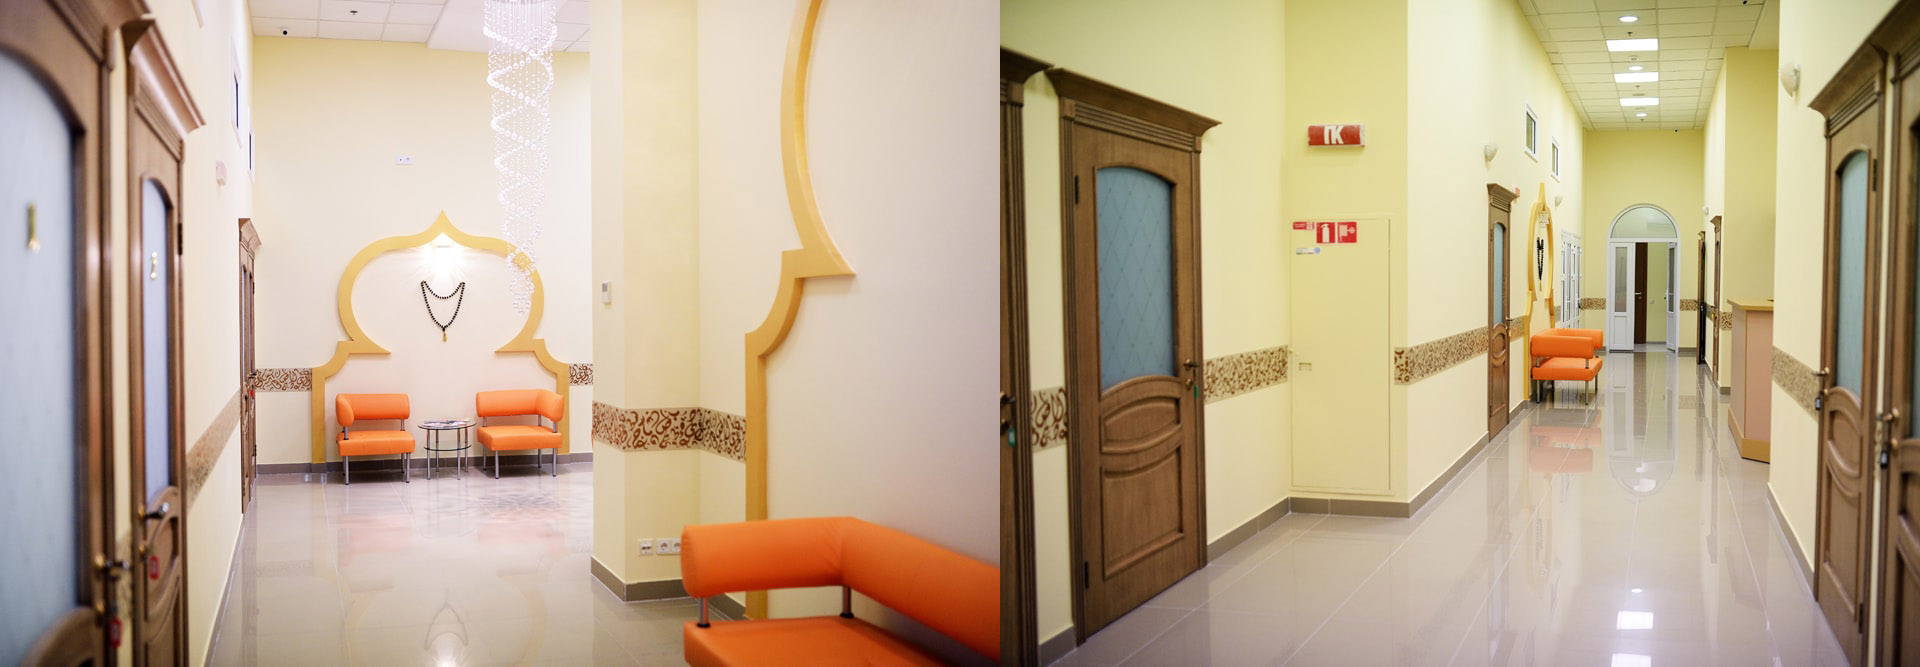 Дизайн интерьера of the medical center Medical center interior design